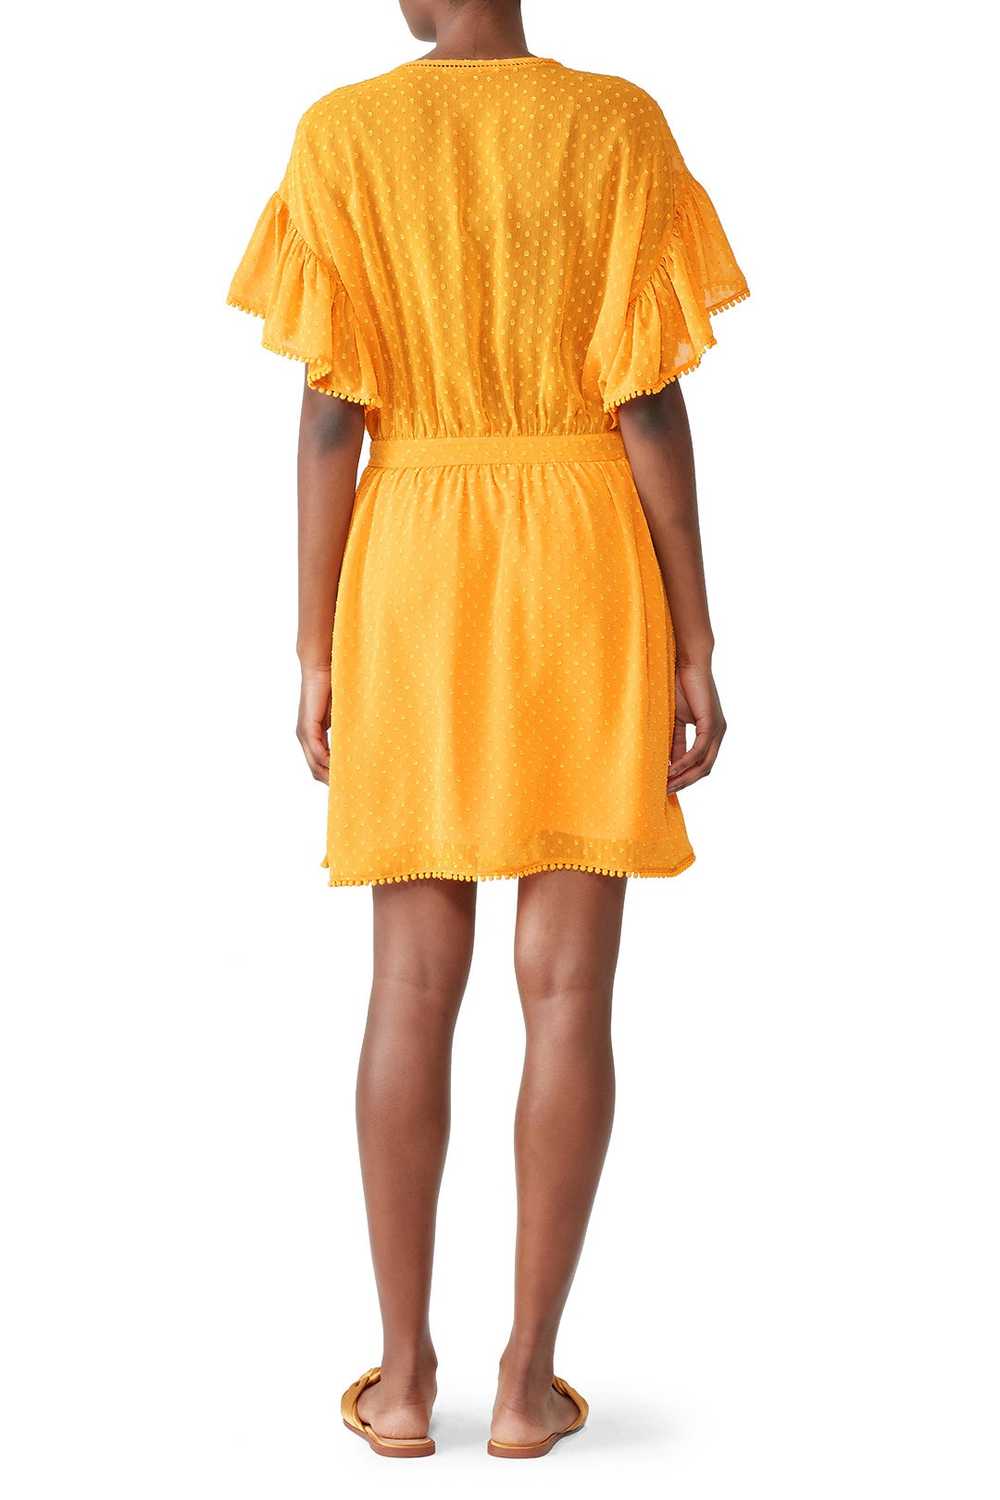 Scotch & Soda Yellow Ruffle Lace Dress - image 2